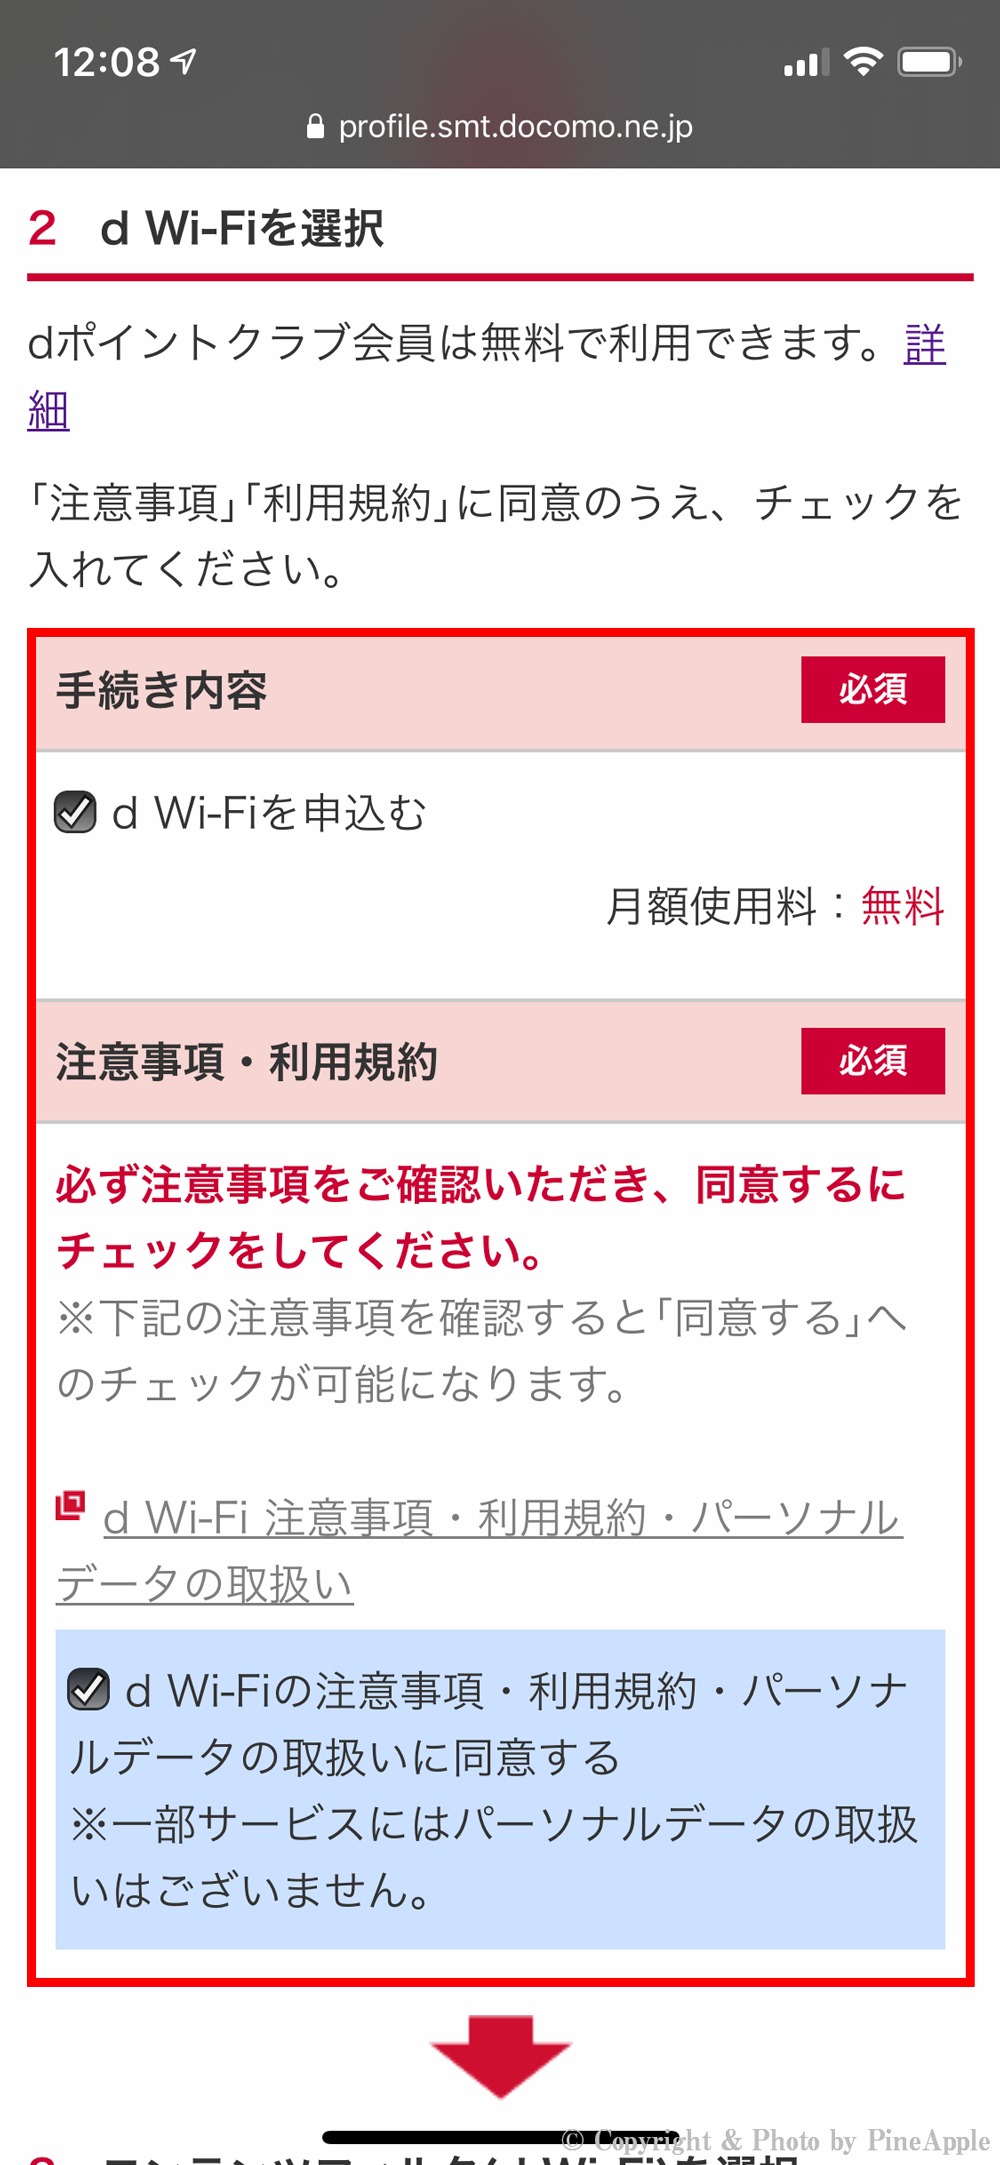 d Wi-Fi："d Wi-Fi 注意事項・利用規約・パーソナル データの取扱い" をタップ